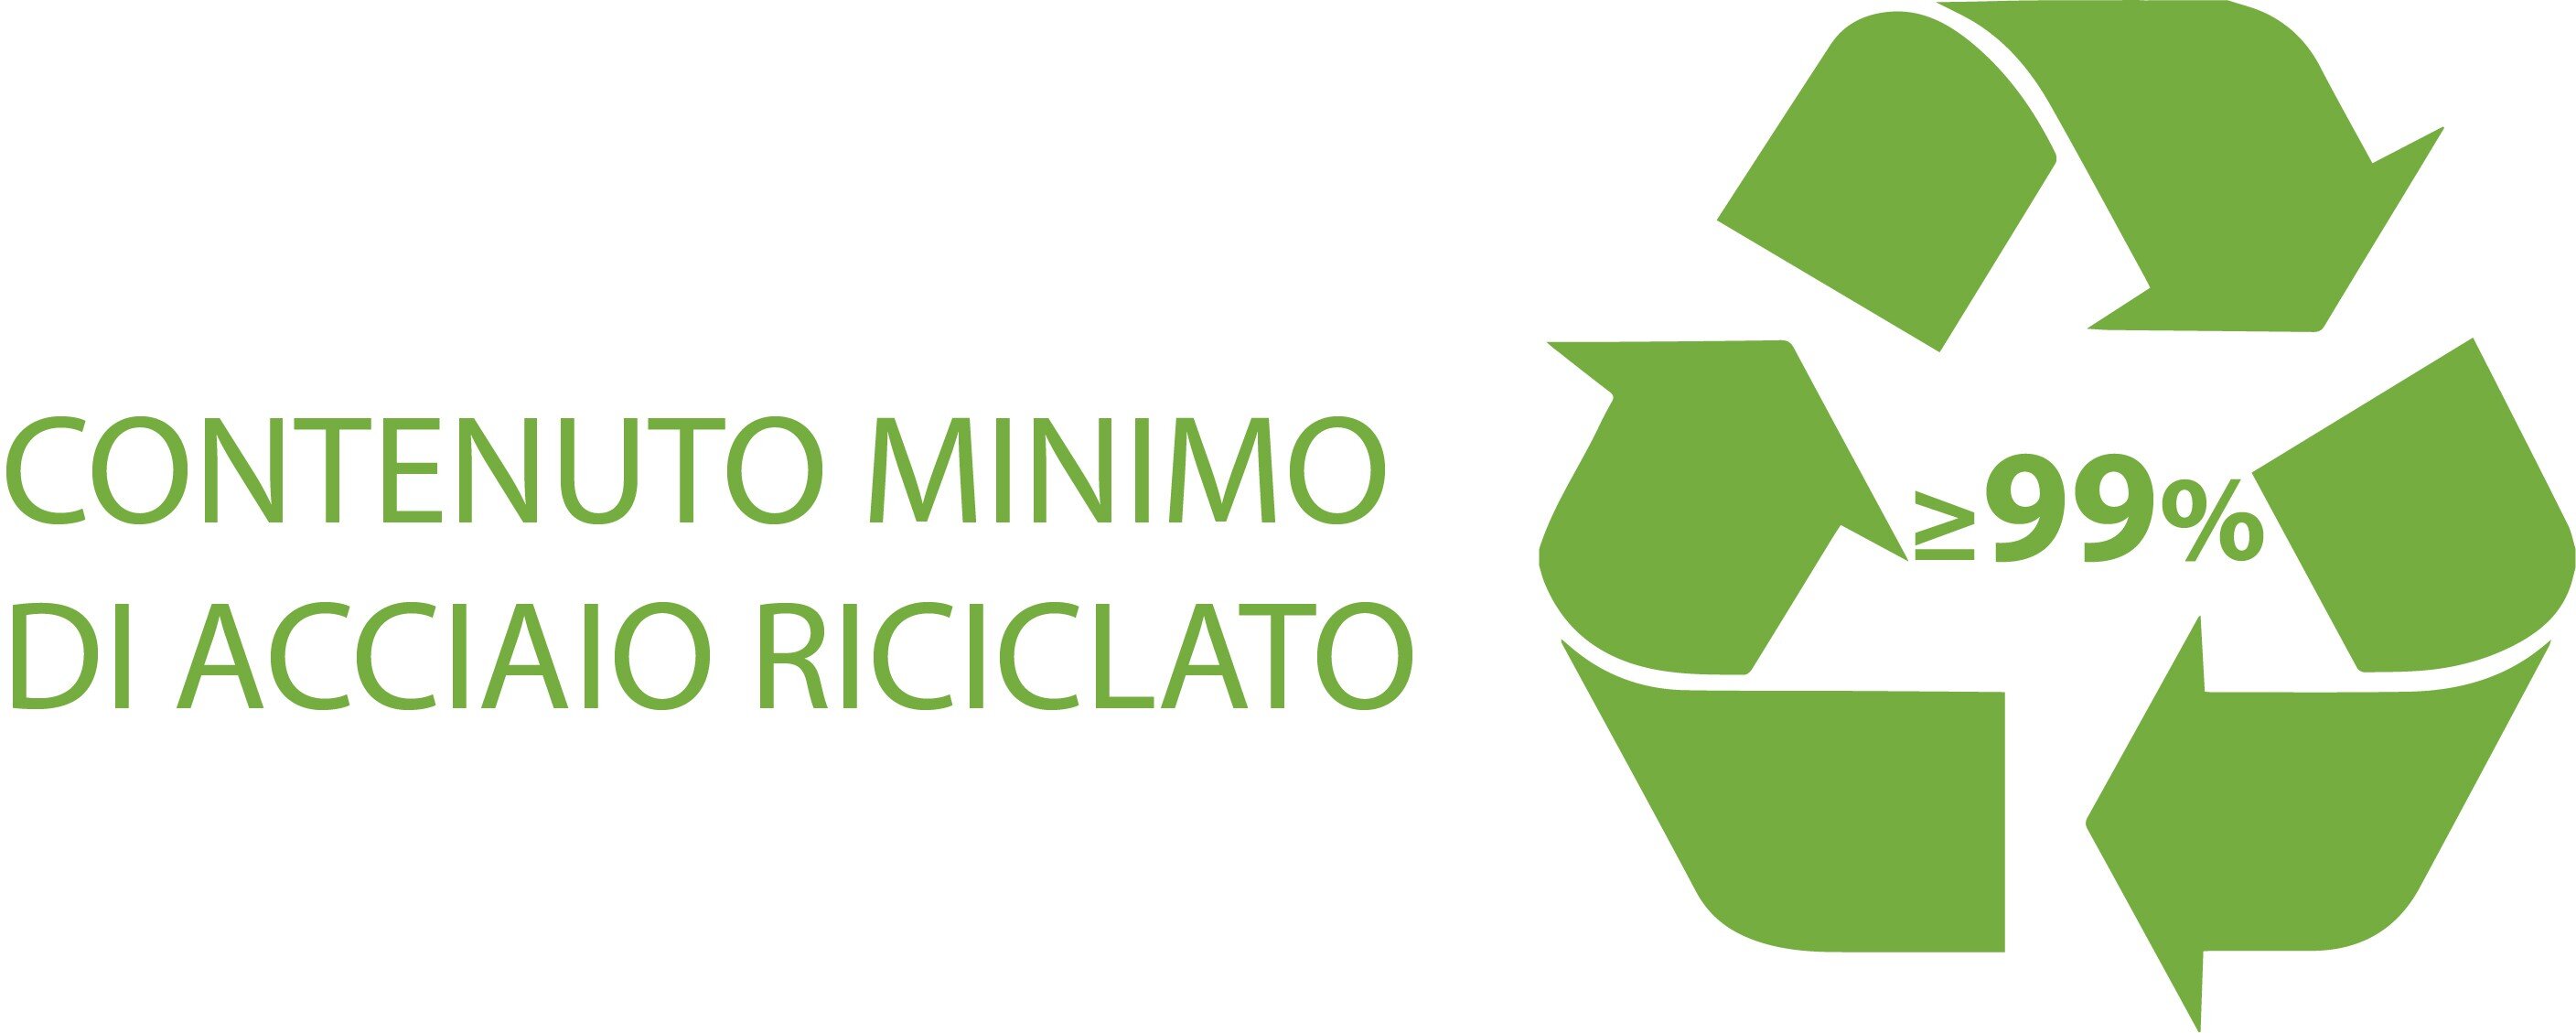 Contenuto di materiale riciclato (UNI/PdR 88:2020 secondo UNI CEI EN ISO/IEC 17067)